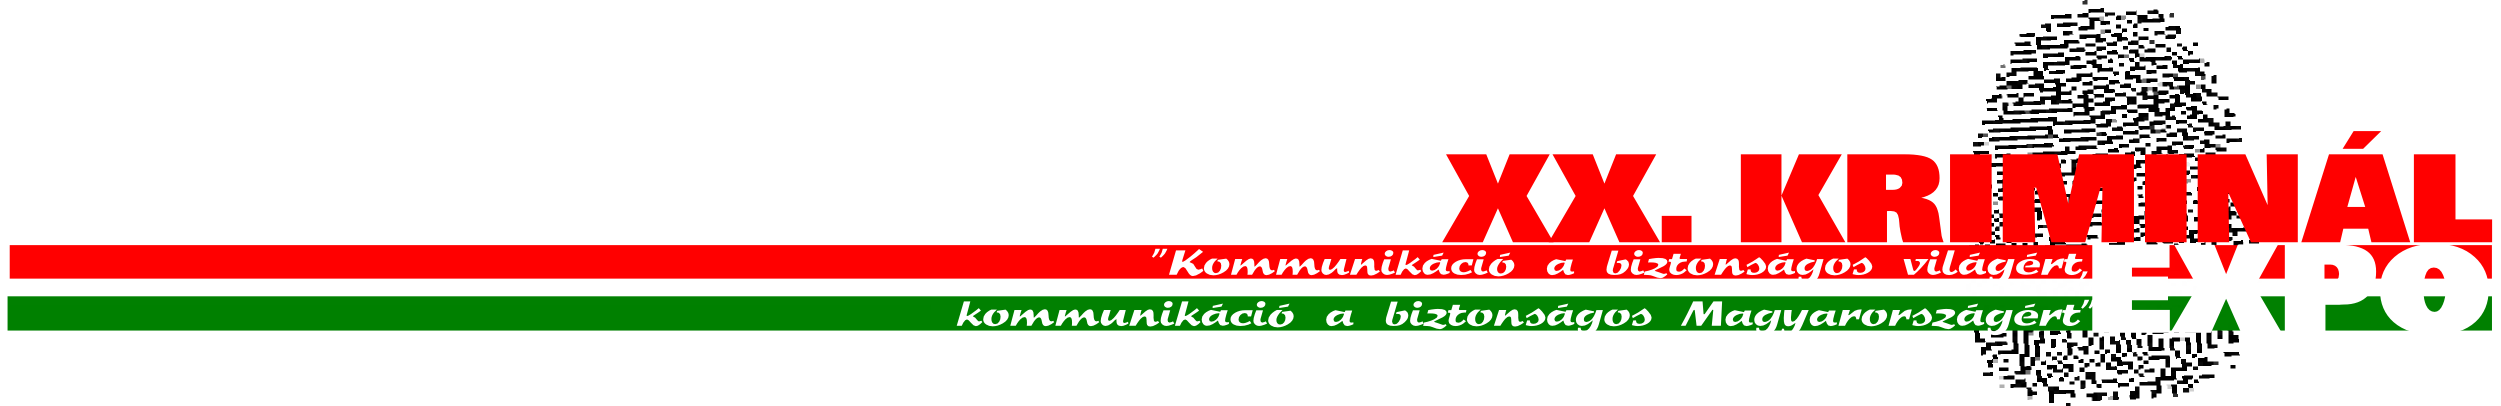 KriminĂĄlexpo 2014-logo-hosszĂş1.png